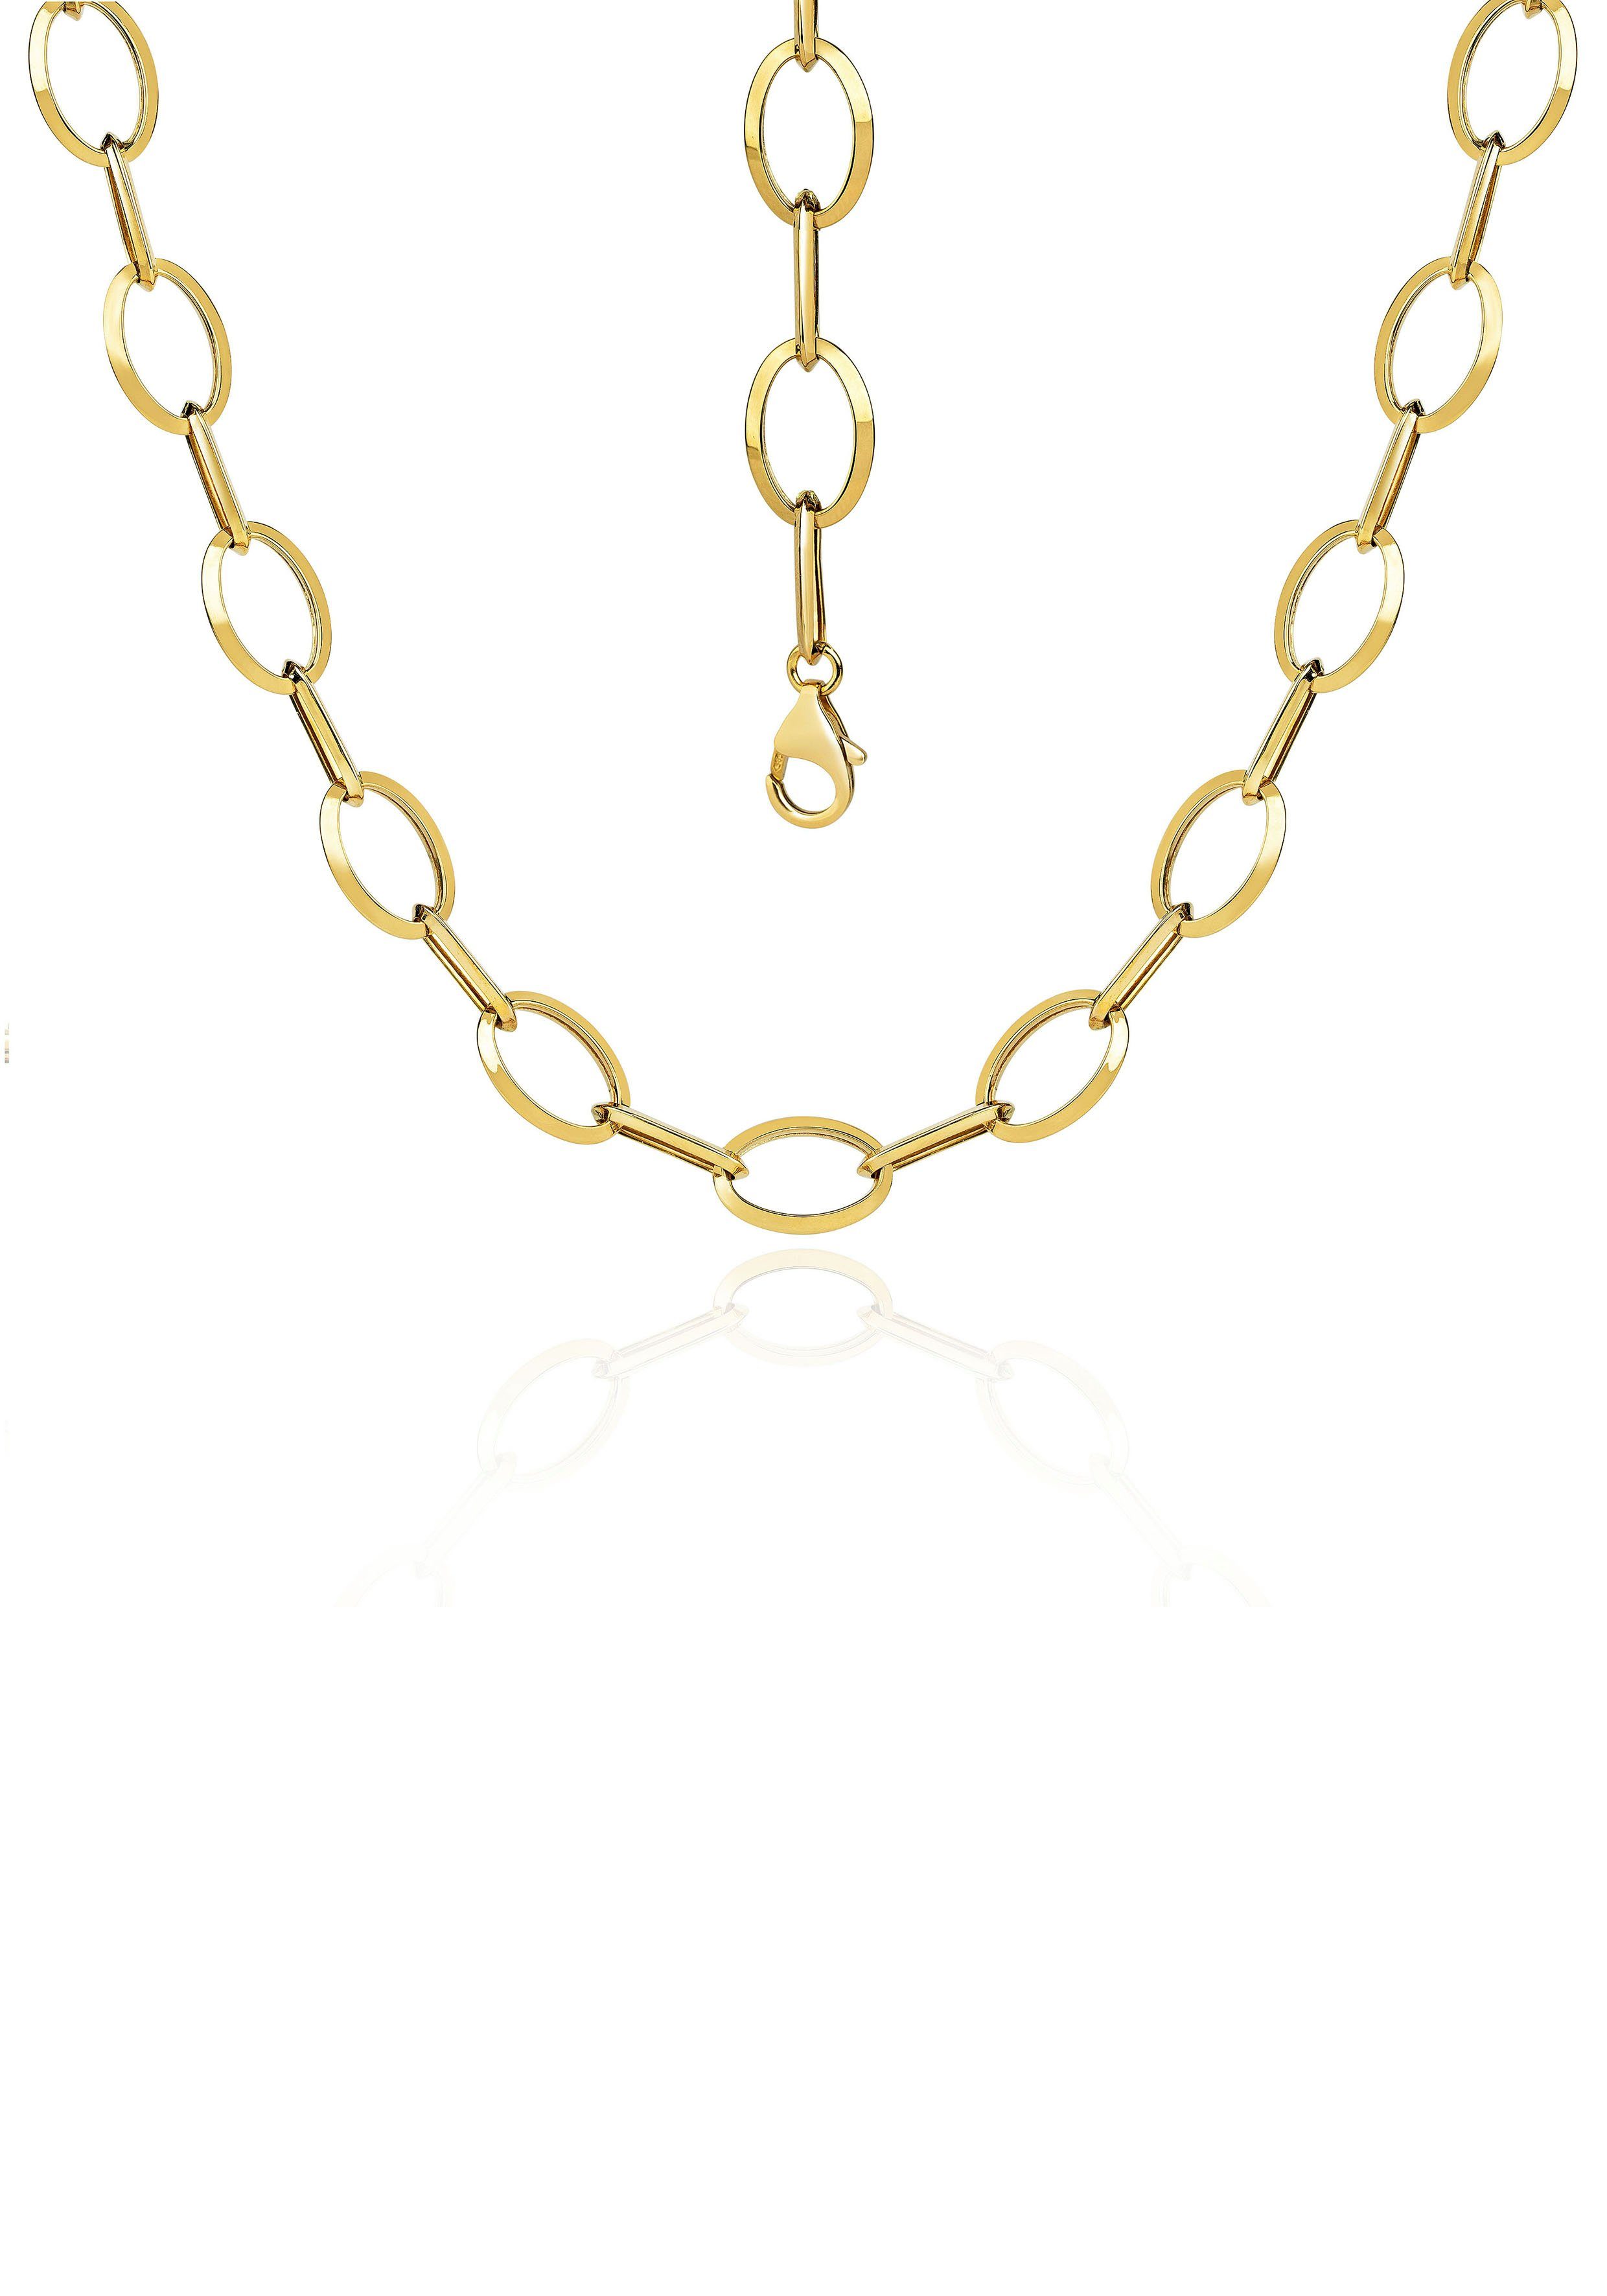 Firetti Goldkette Schmuck Geschenk Gold 585, Langankerkette, ca. 10 mm breit, zu Kleid, Shirt, Jeans, Sneaker! Anlass Geburtstag Weihnachten